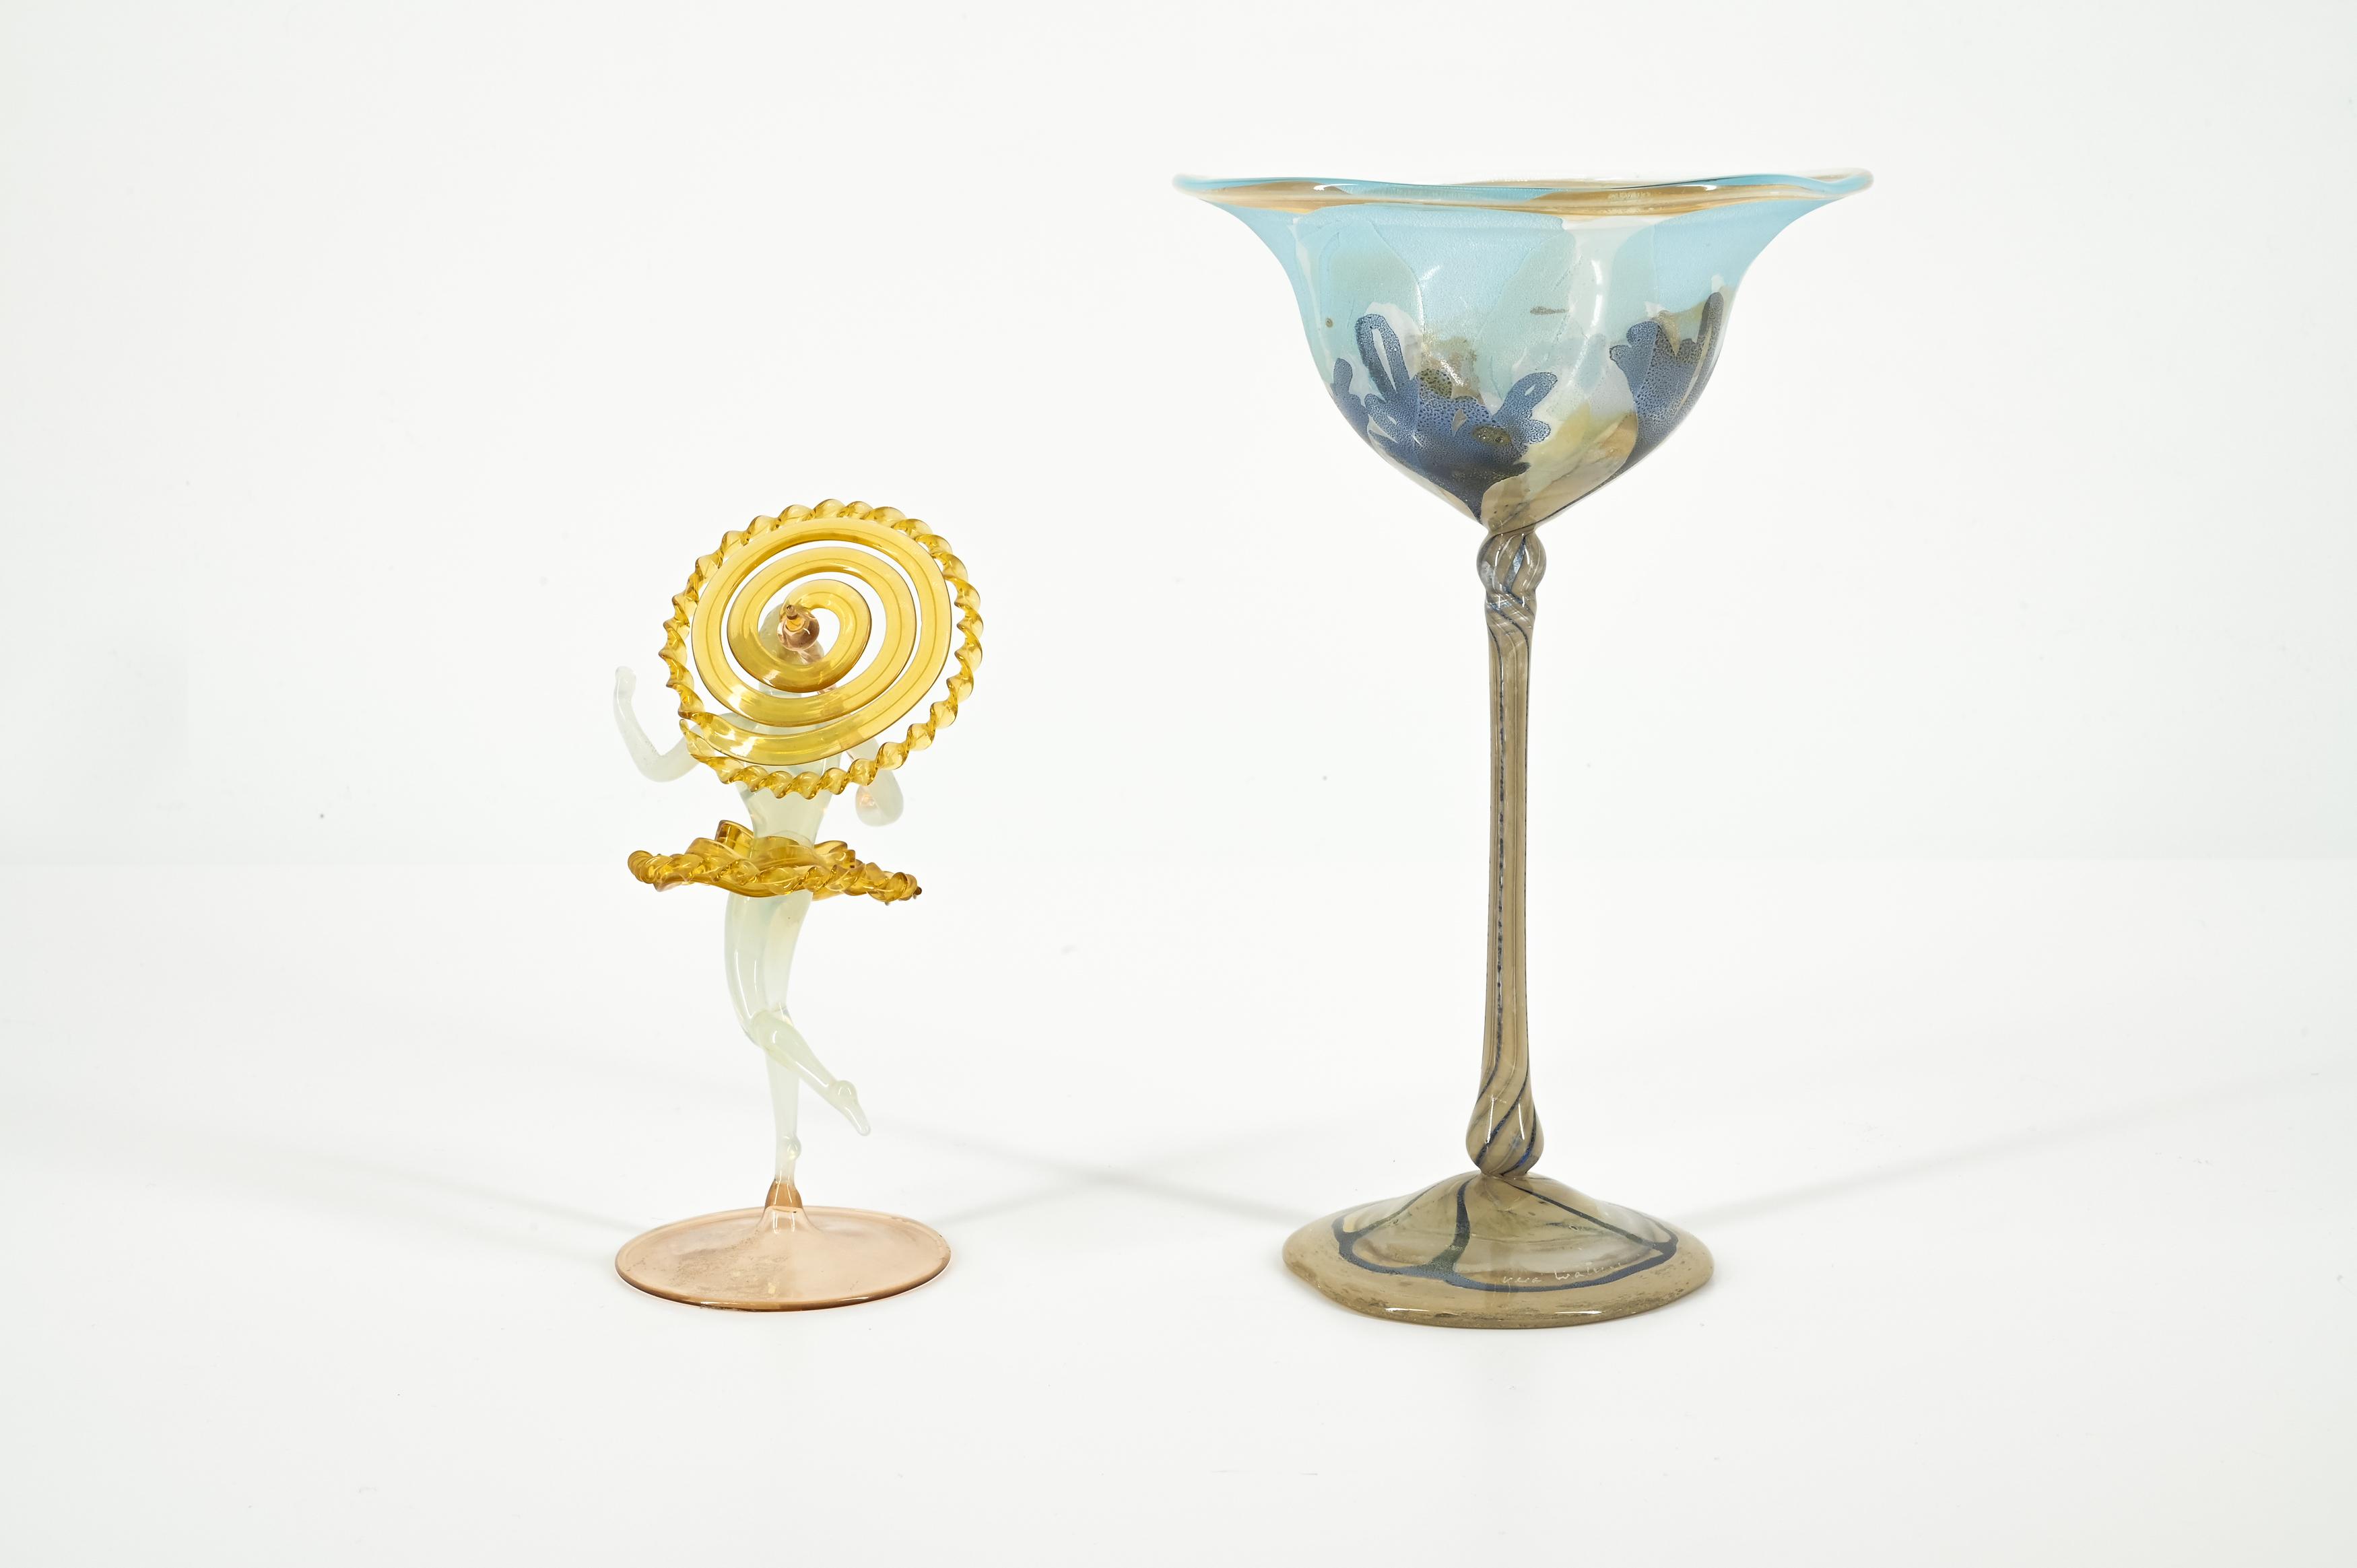 Frauenfigur mit Schirm, Stengelglas, zwei Karaffen - Image 17 of 20